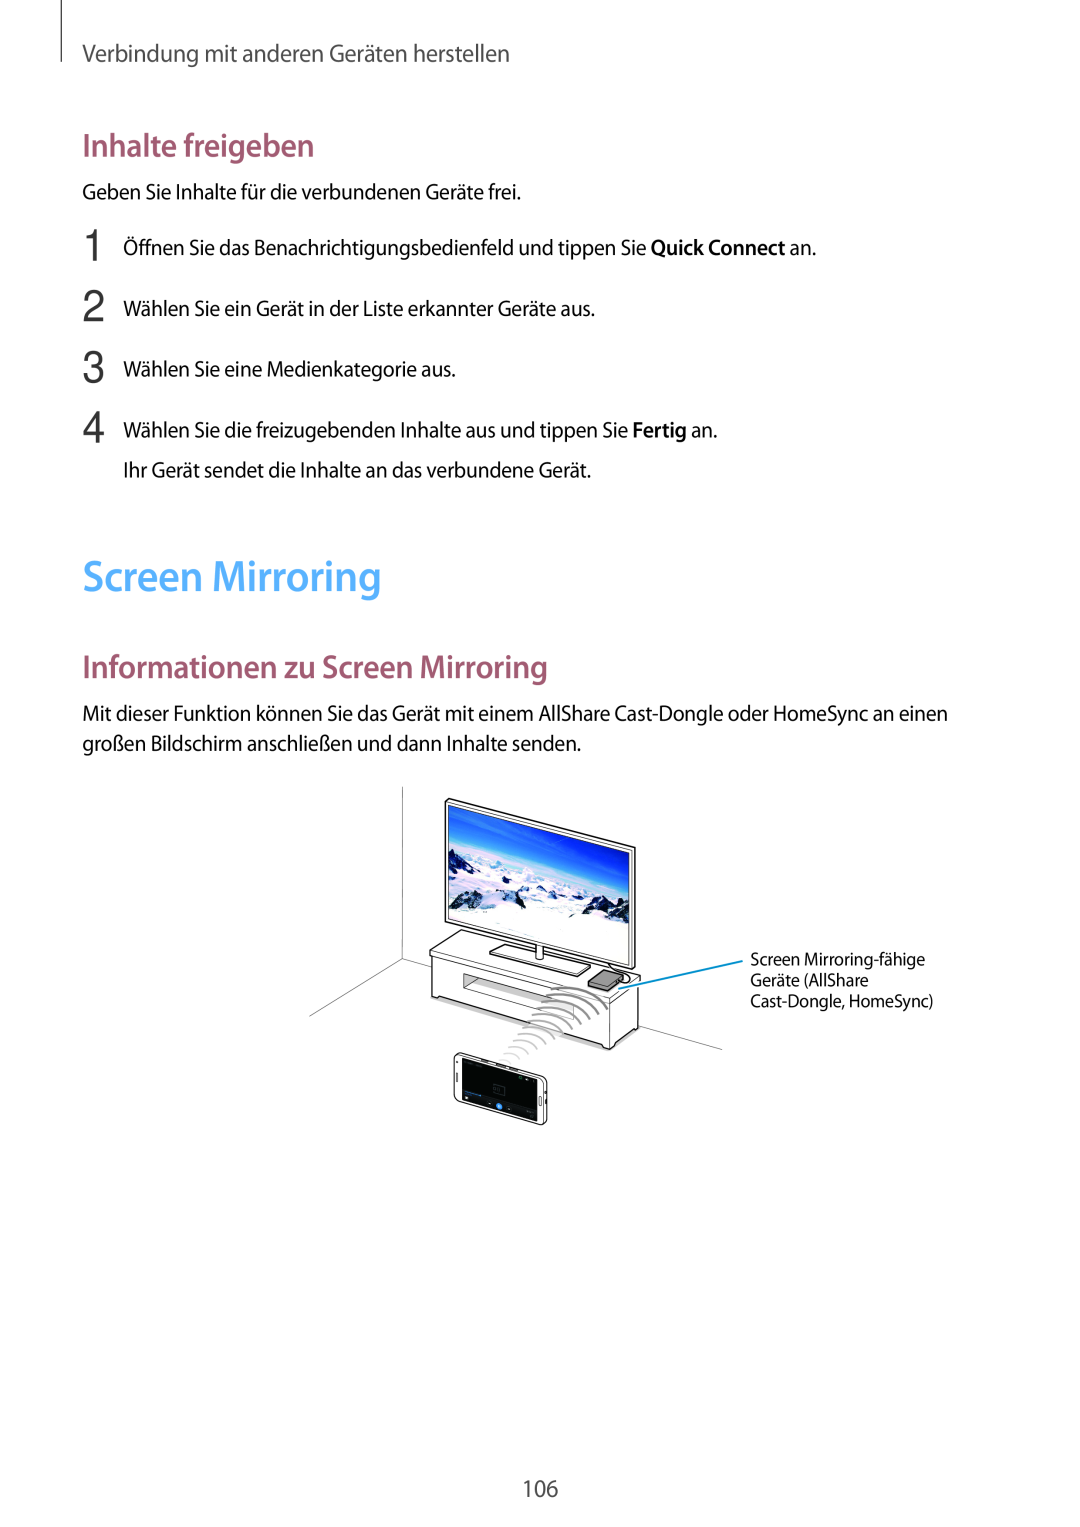 Samsung SM-A500FZKUTPH Inhalte freigeben, Informationen zu Screen Mirroring, Verbindung mit anderen Geräten herstellen 